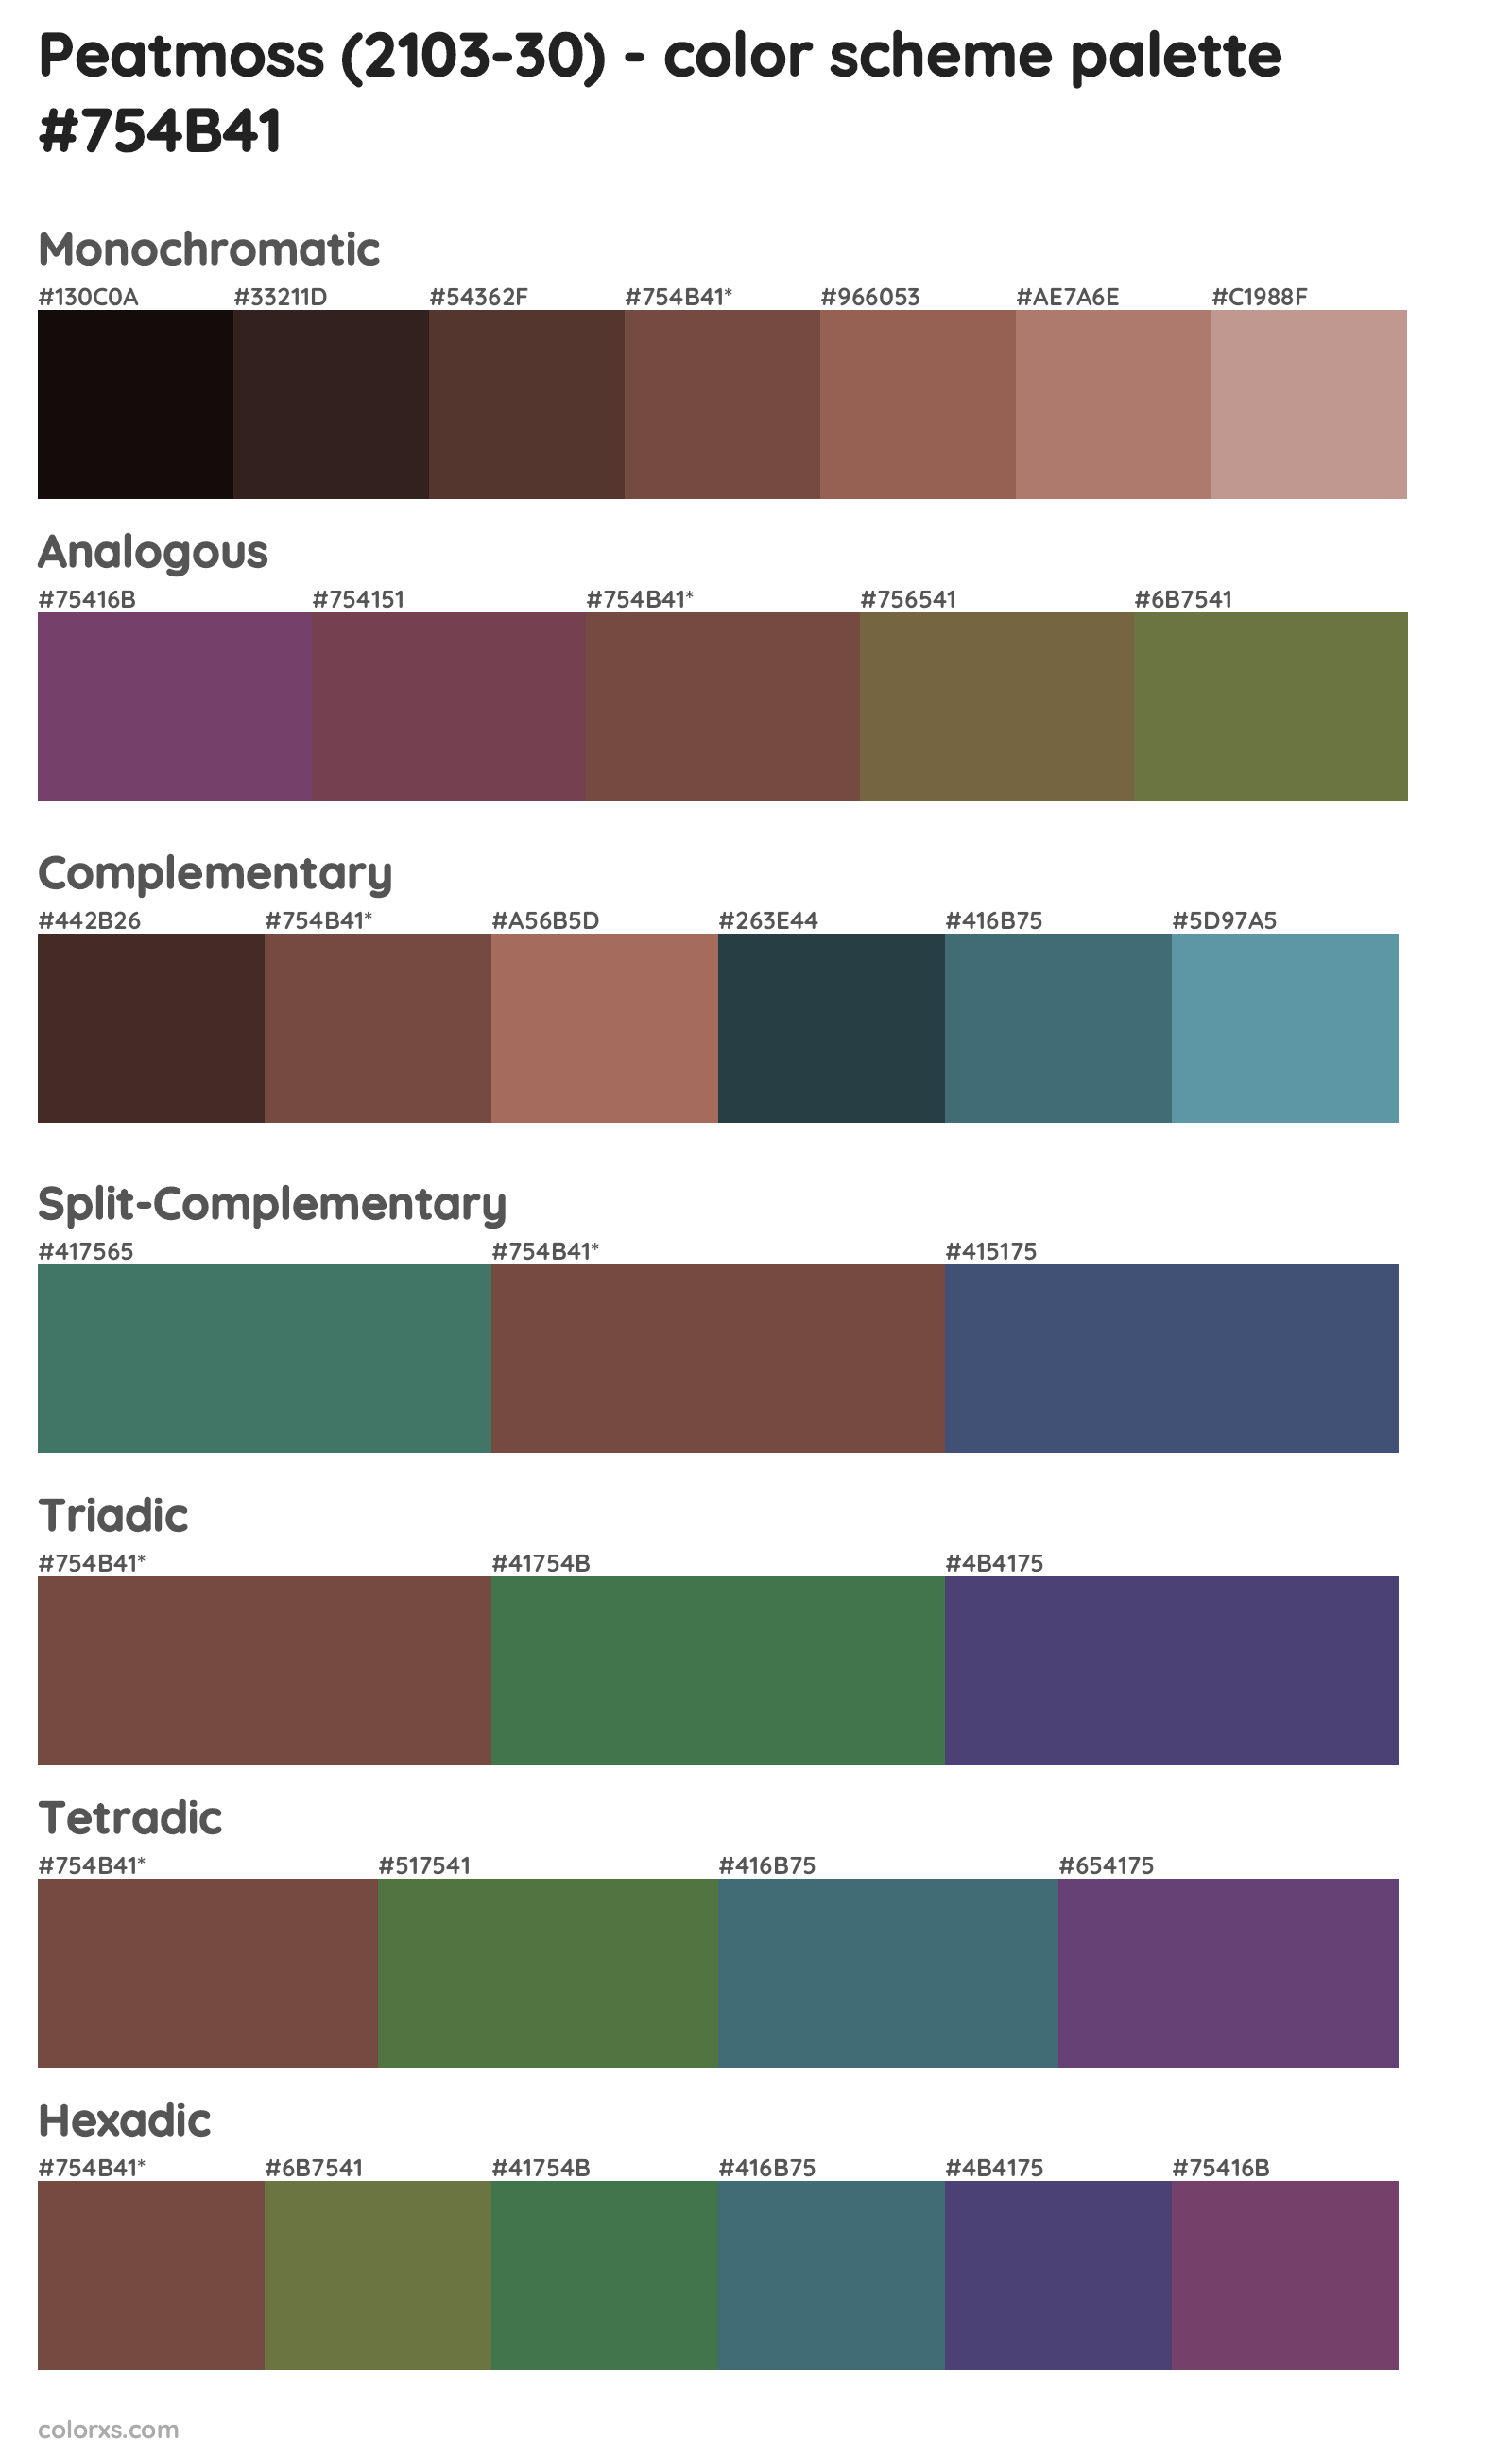 Peatmoss (2103-30) Color Scheme Palettes